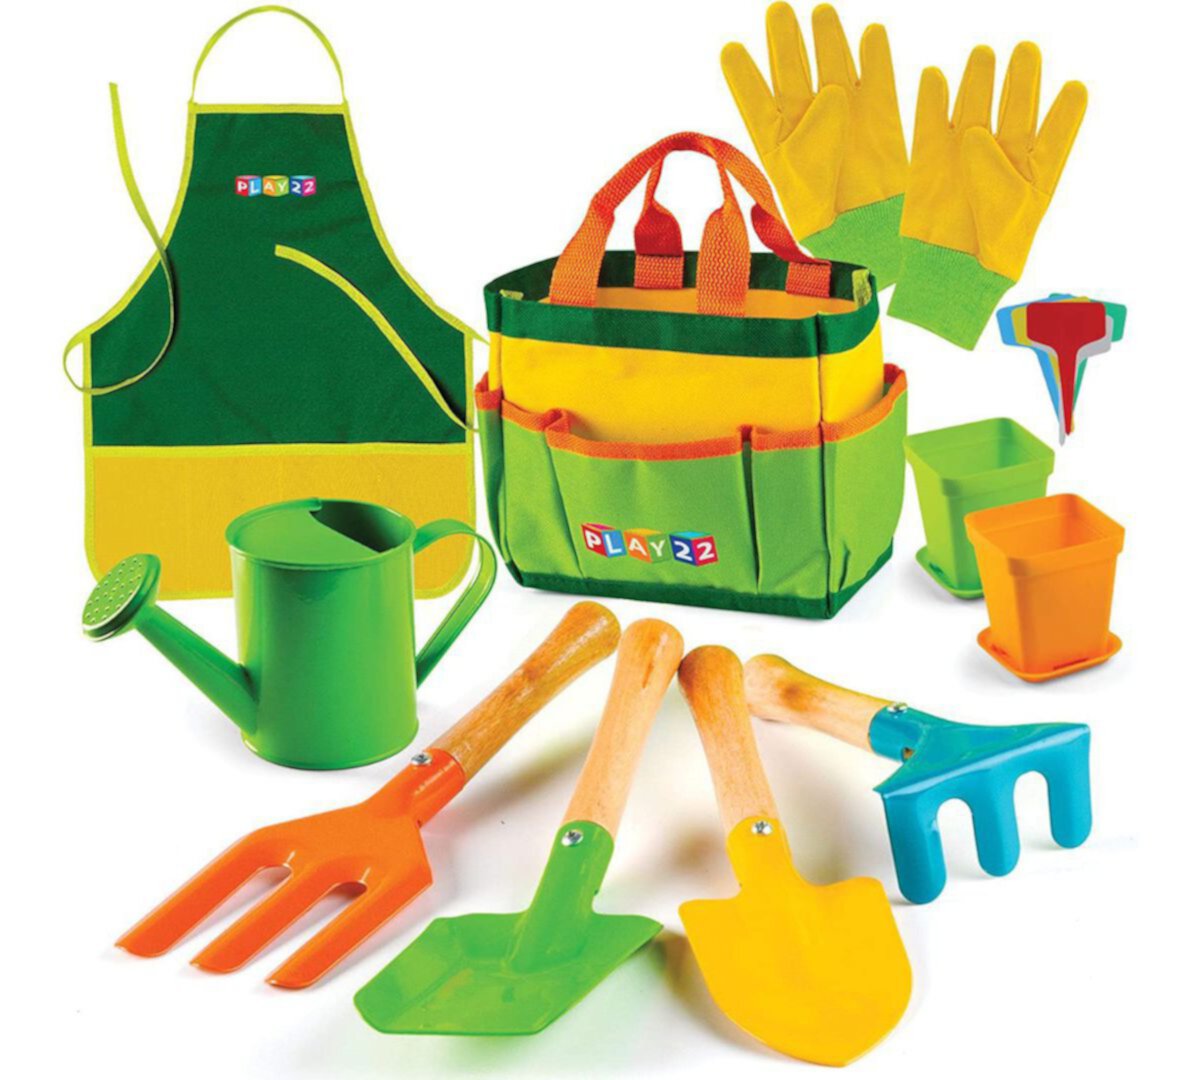 Kids Gardening Tool Set 12PCS with Shovel, Rake, Fork, Trowel, Apron, Gloves Watering Can & Tote Bag Play22